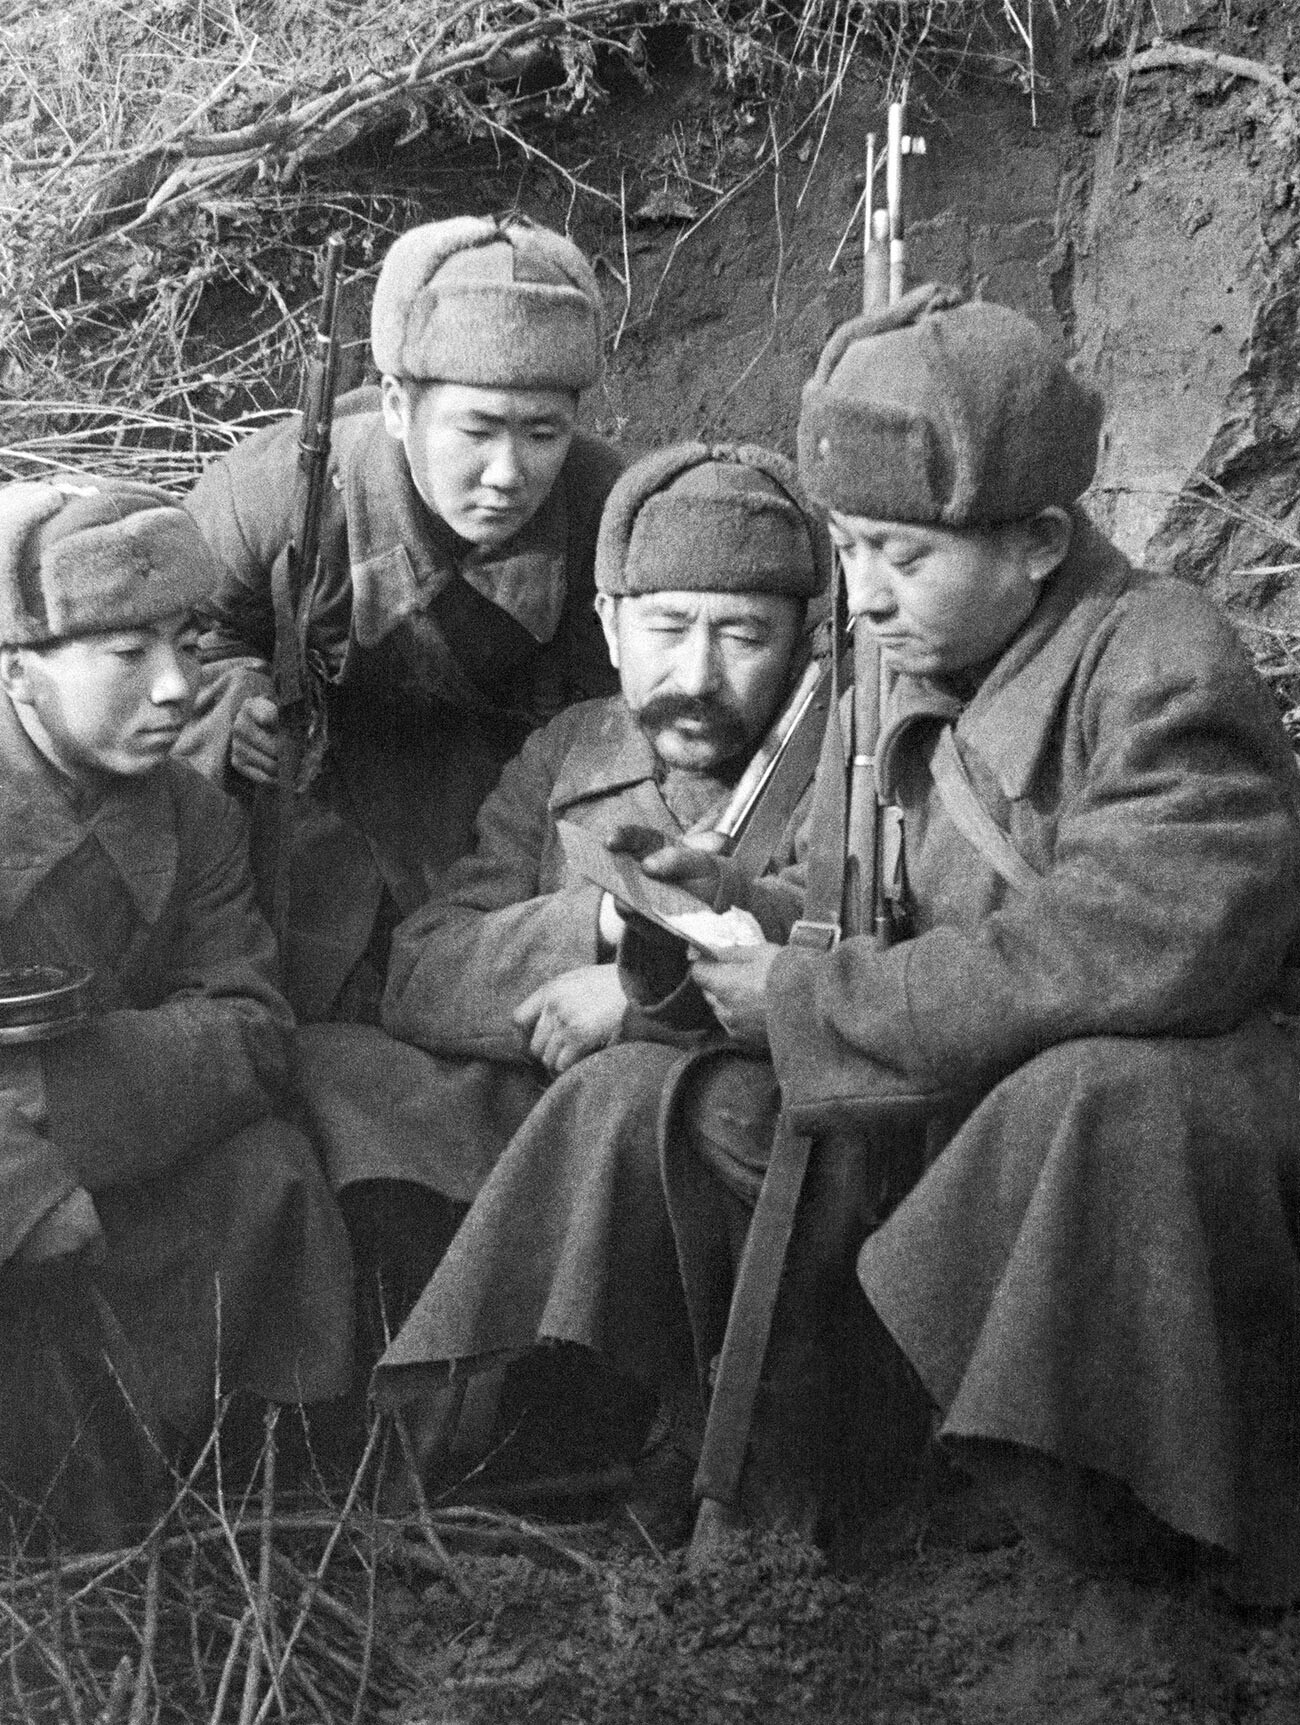 Soldats kazakhs lisant du courrier en provenance de chez eux lors de la Seconde Guerre mondiale

